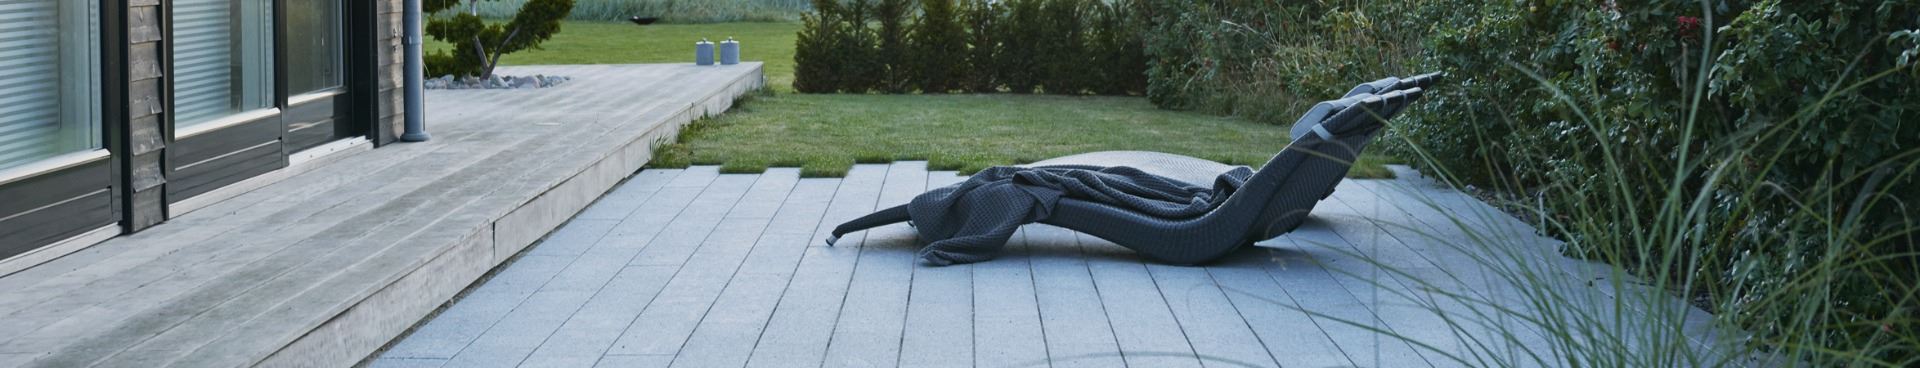 Lys granit plank i have designet af havearkitekt Tor Haddeland